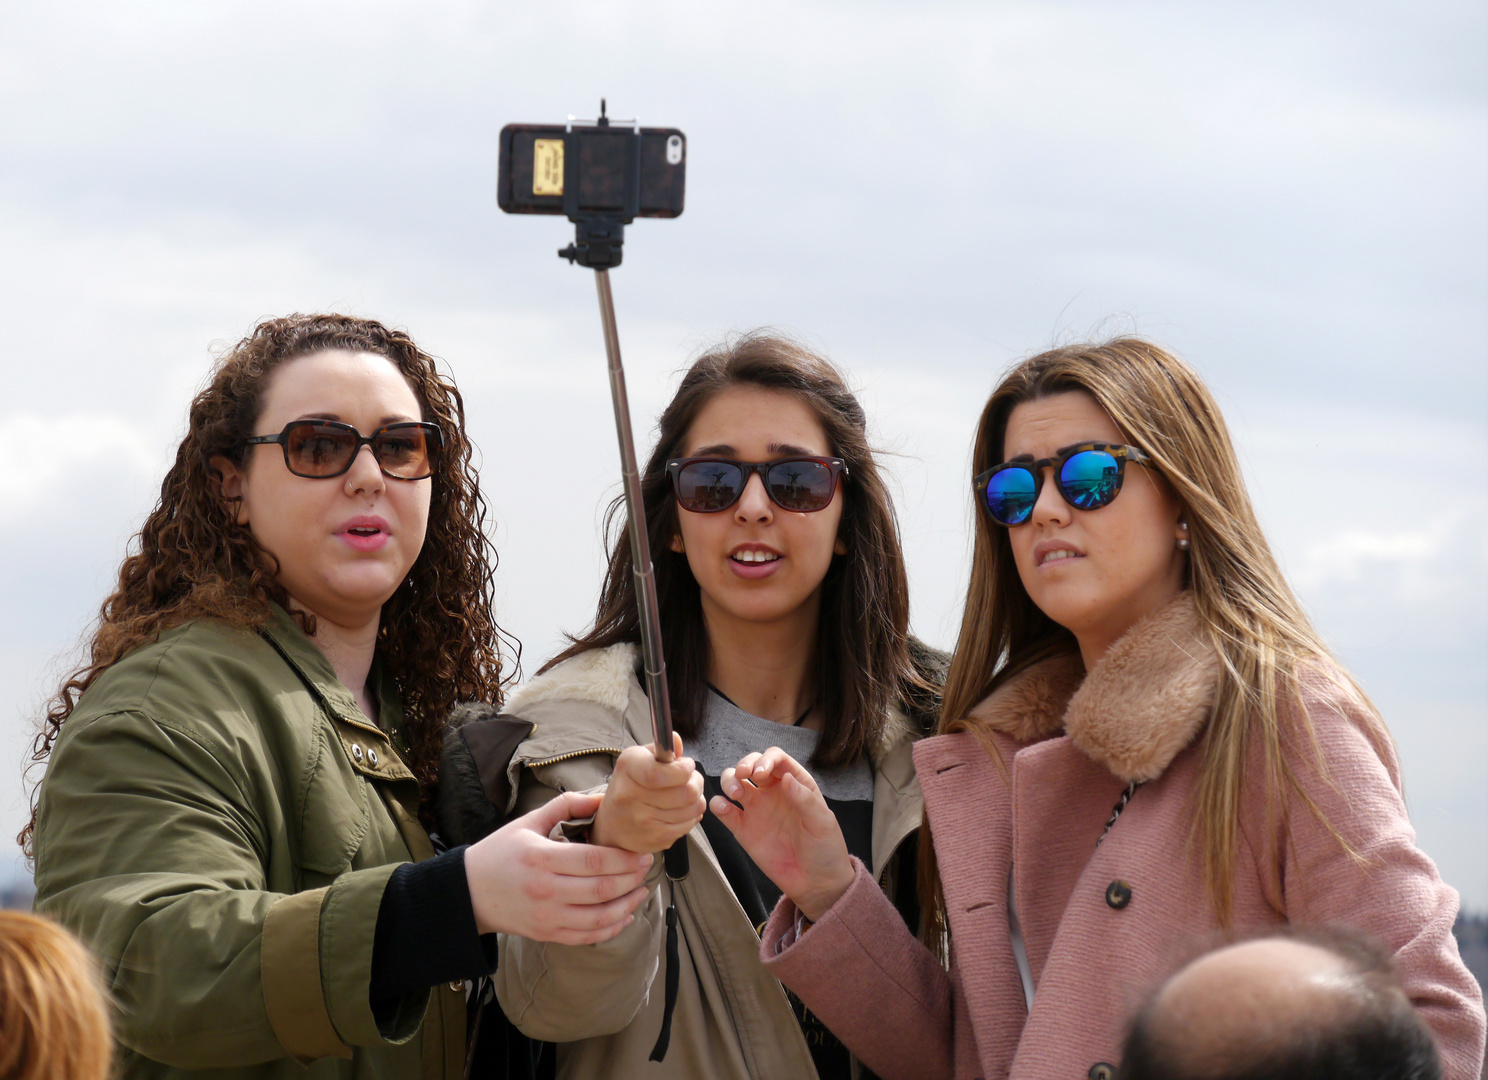 Auf der Engelsburg - das perfekte Selfie